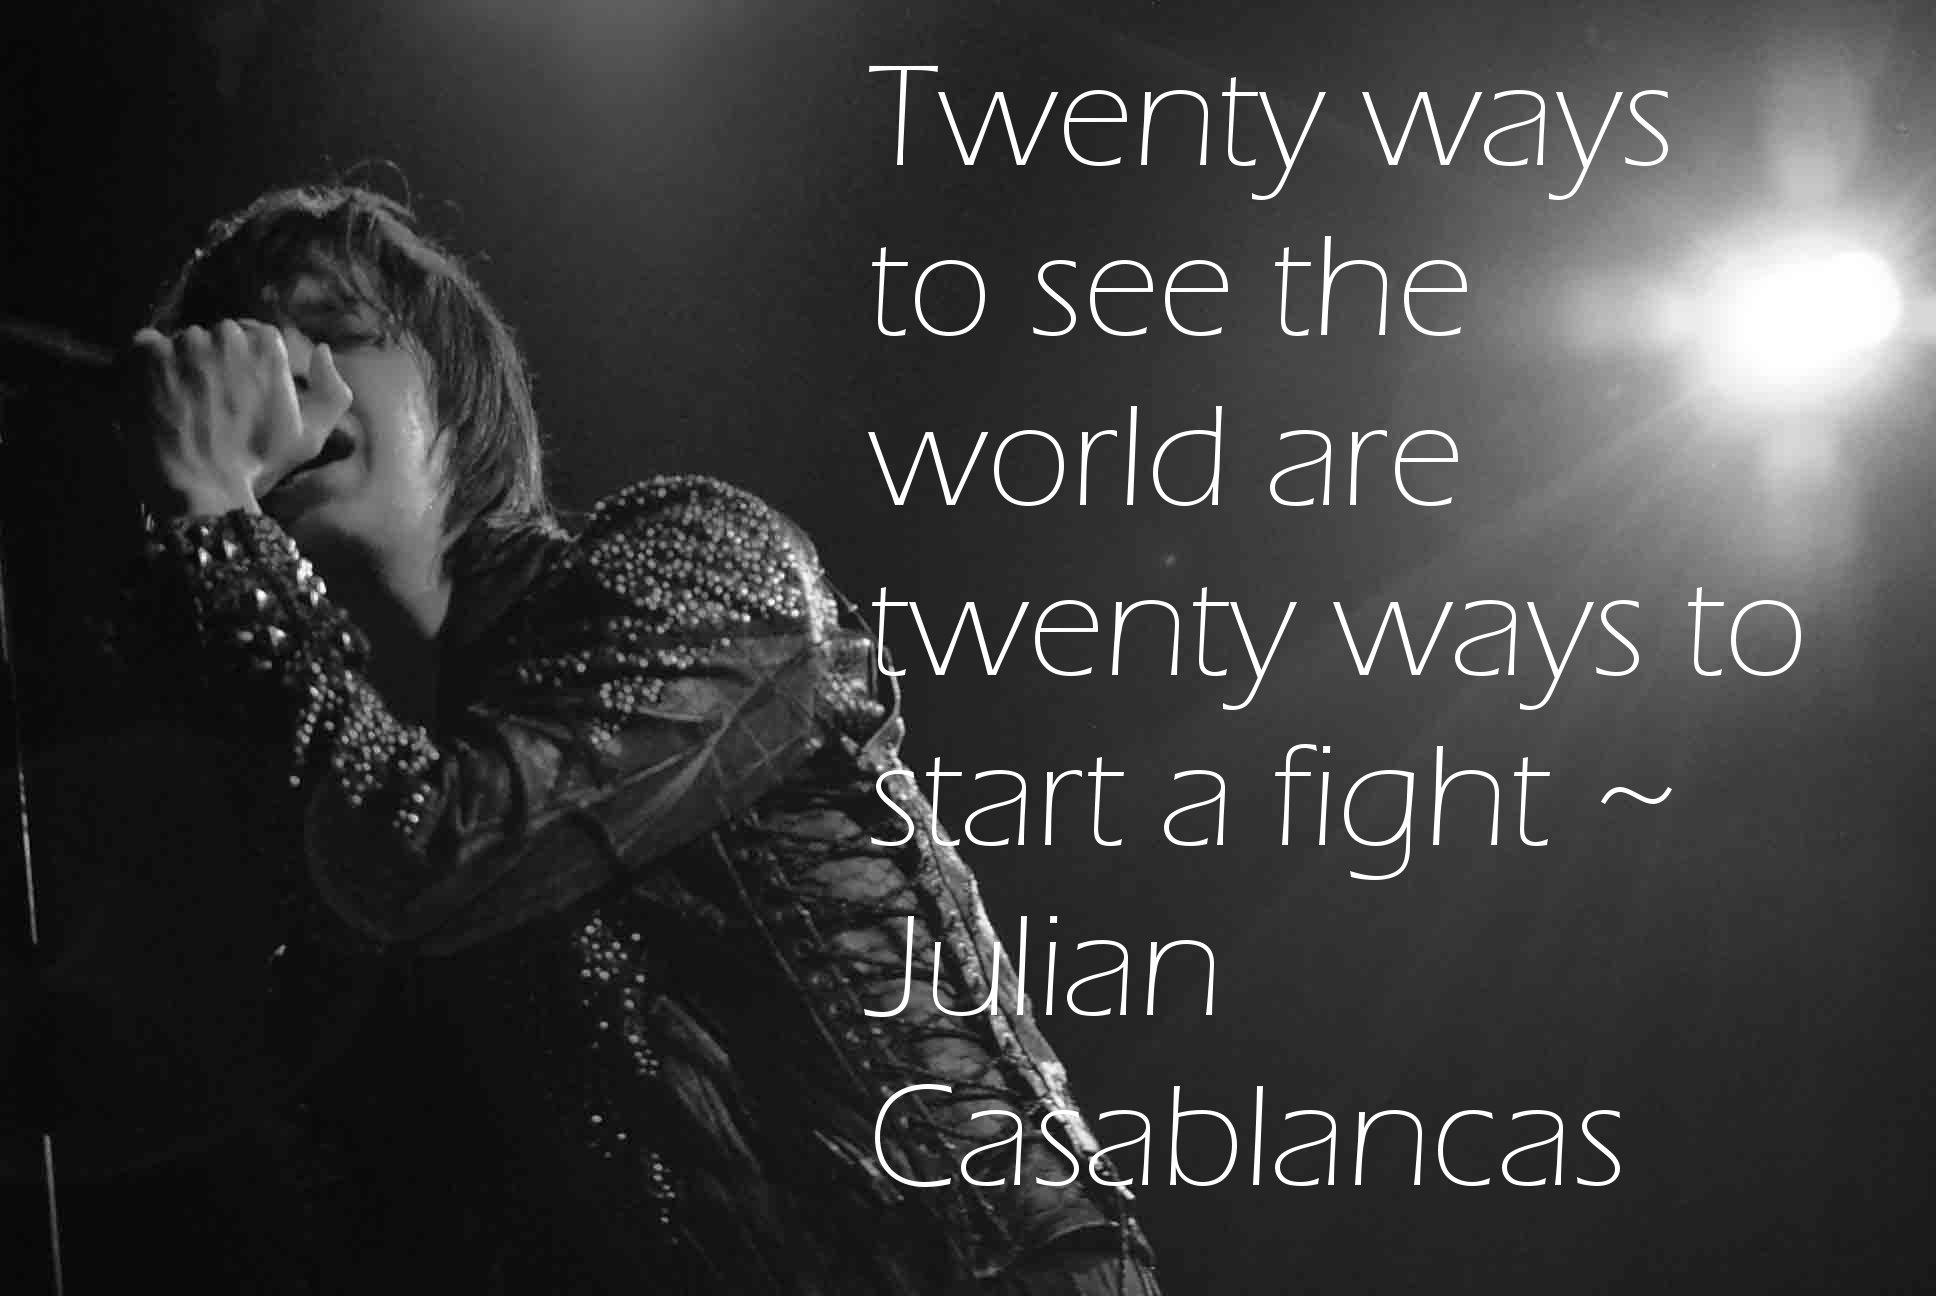 Julian Casablancas's quote #4